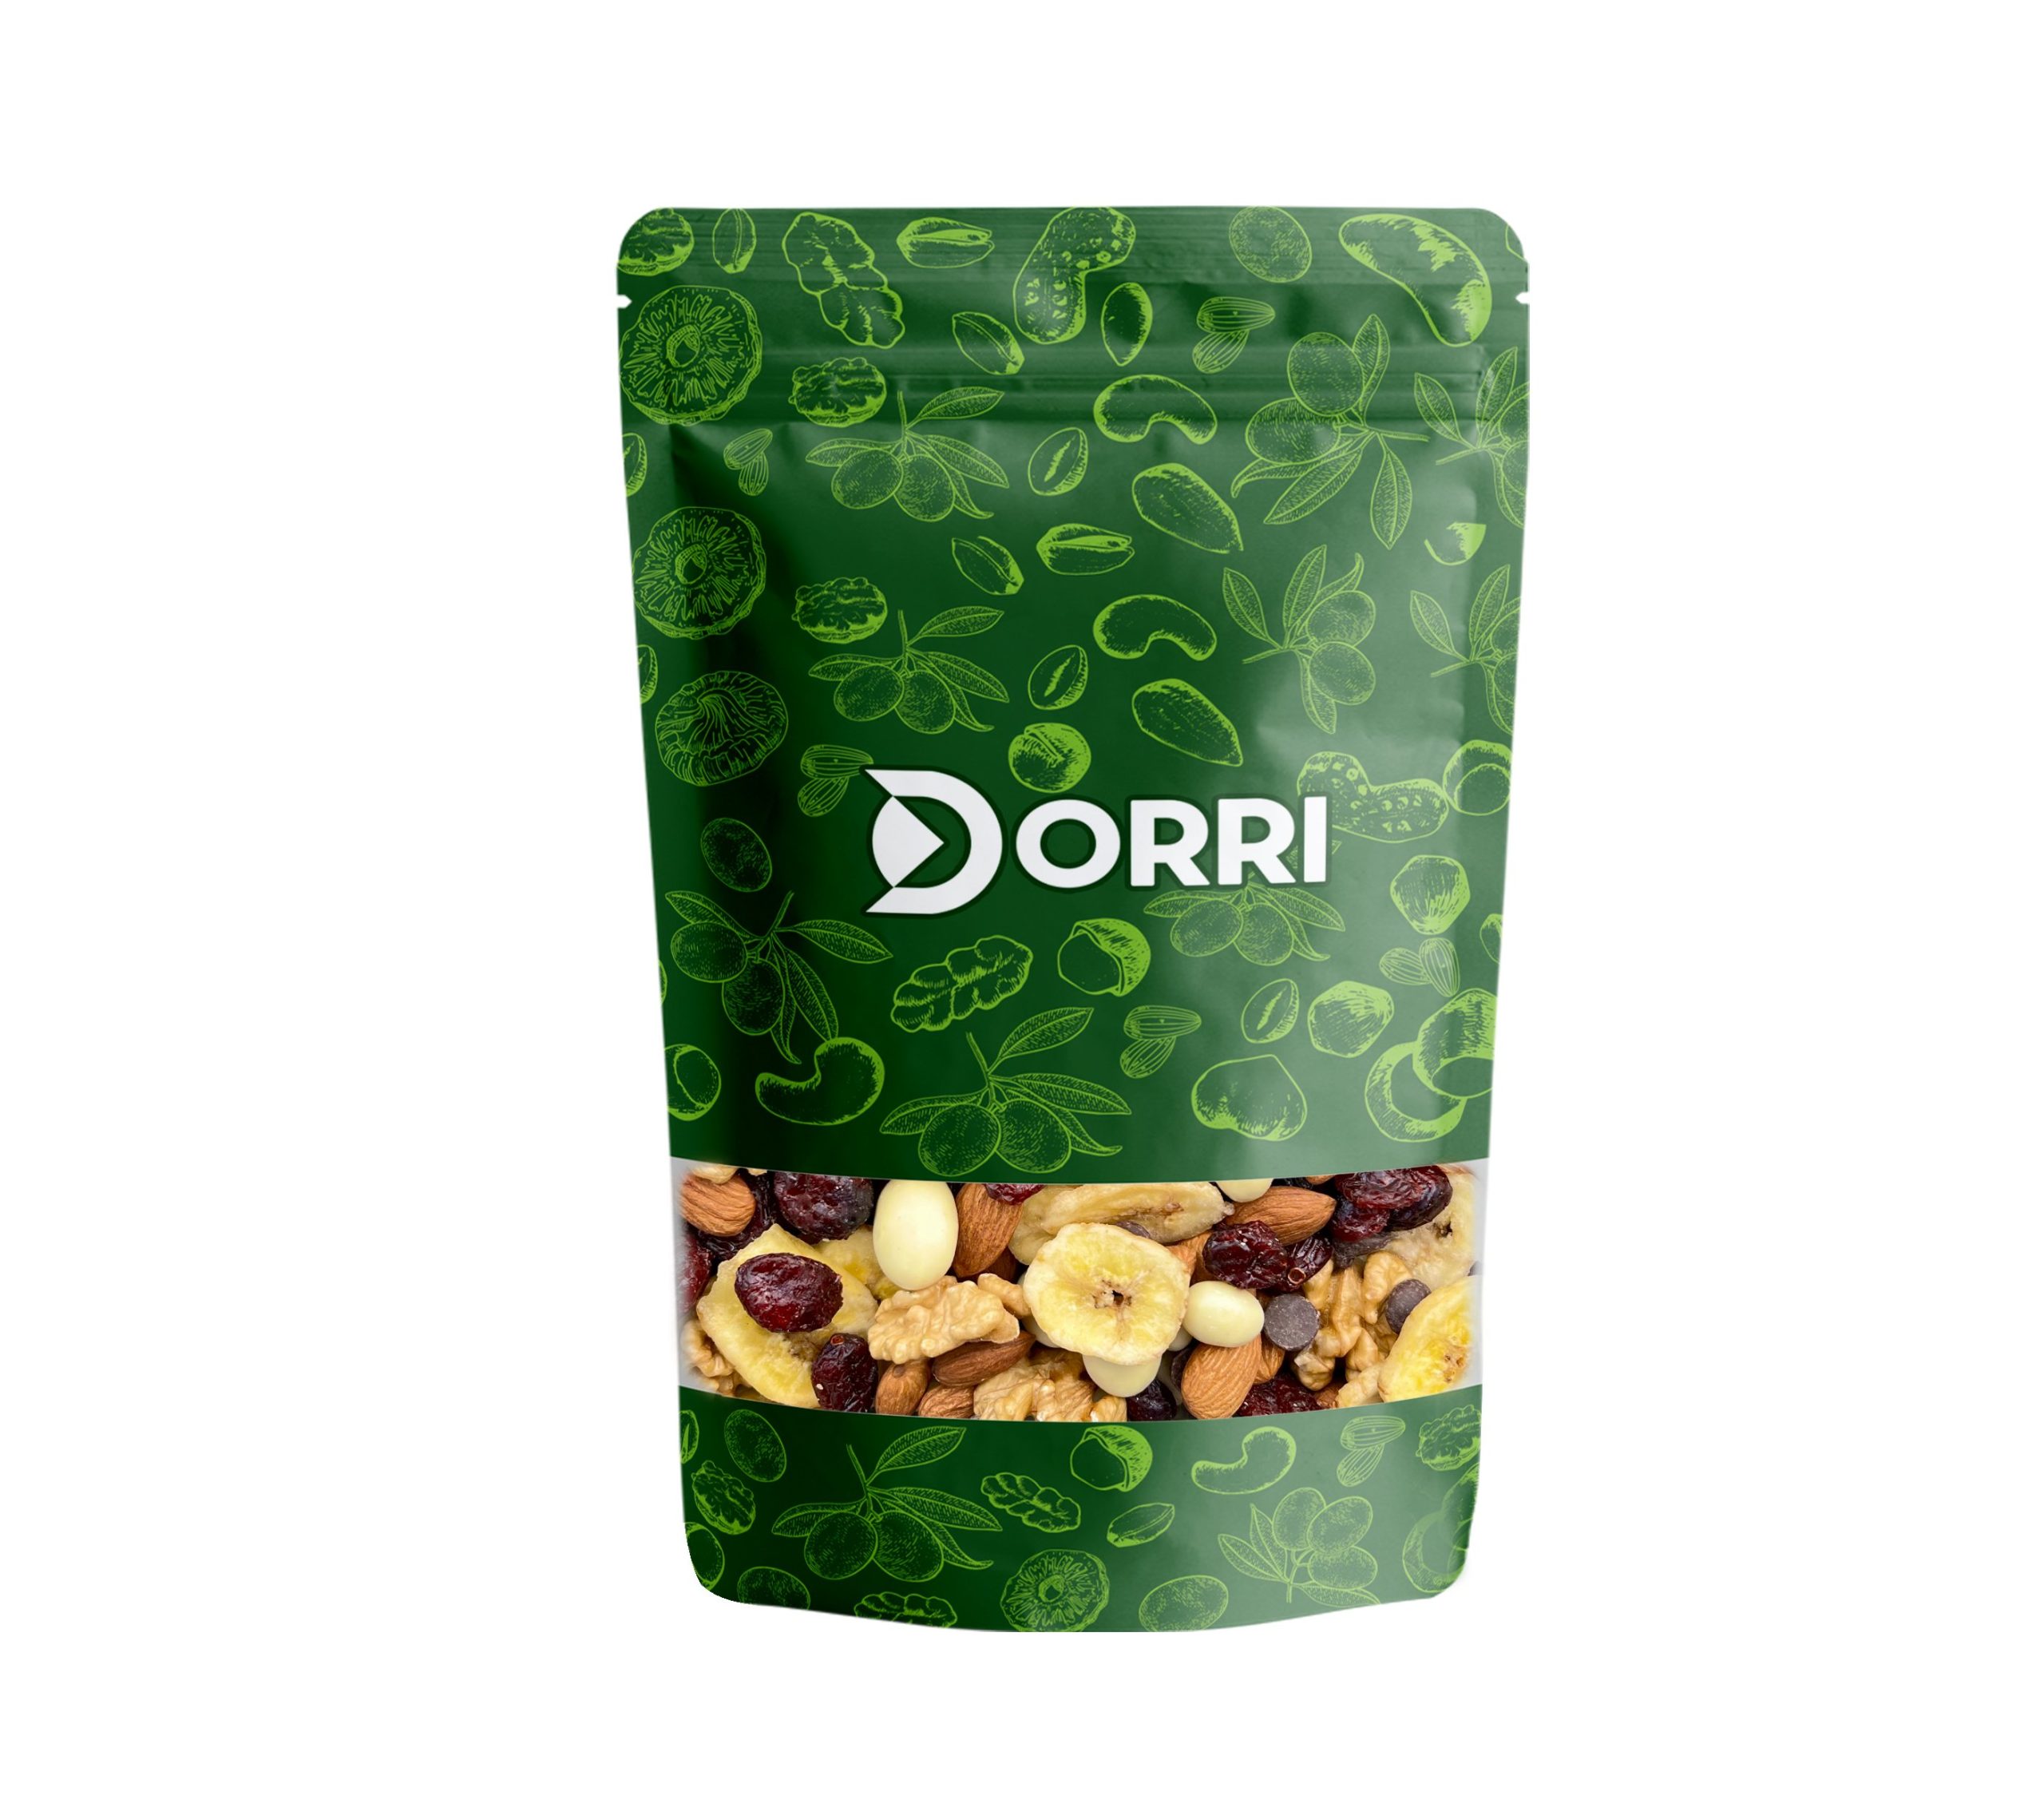 Dorri - Trail mix